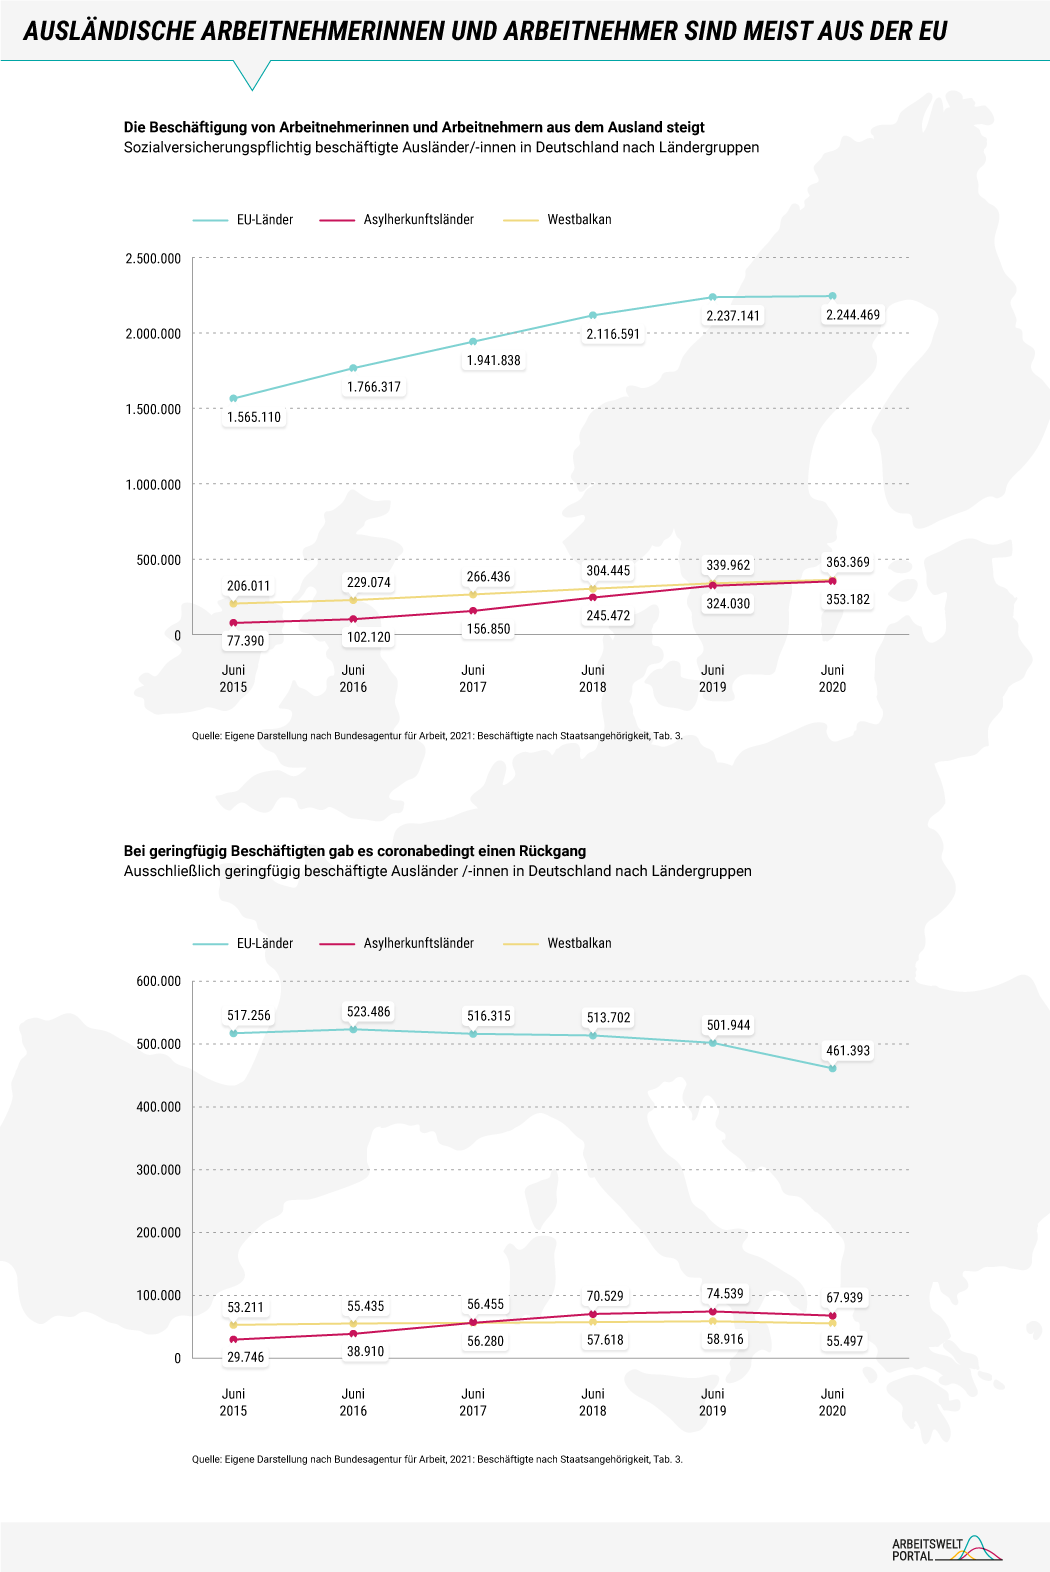 Die Infografik ist in zwei Abschnitte unterteilt und zeigt zunächst die Entwicklung von ausländischen sozialversicherungspflichtigen Beschäftigtengruppen in Deutschland zwischen Juni 2015 und Juni 2020. Die meisten ausländischen Erwerbstätigen kommen aus der EU, deren Anzahl hat sich von knapp 1,6 Millionen auf über 2,2 Millionen innerhalb von 5 Jahren erhöht. Die Beschäftigung von Geflüchteten hat sich im gleichen Zeitraum von über 77.000 auf über 350.000 erhöht. Eine etwas größere Gruppe bilden Beschäftigte aus den Westbalkan-Ländern, die von 206.000 auf über 363.000 angestiegen ist.   Die zweite Grafik zeigt die Entwicklung von ausländischen geringfügig Beschäftigten. Auch hier dominieren Erwerbstätige aus der EU, deren Zahl allerdings im Zuge der Corona-Pandemie auf zuletzt 461.000 gesunken ist. Geflüchtete und Erwerbstätige aus den Westbalkan-Ländern sind eher selten geringfügig beschäftigt. Deren Zahl betrug 2020 knapp 68.000 bzw. 55.000 Beschäftigte.     